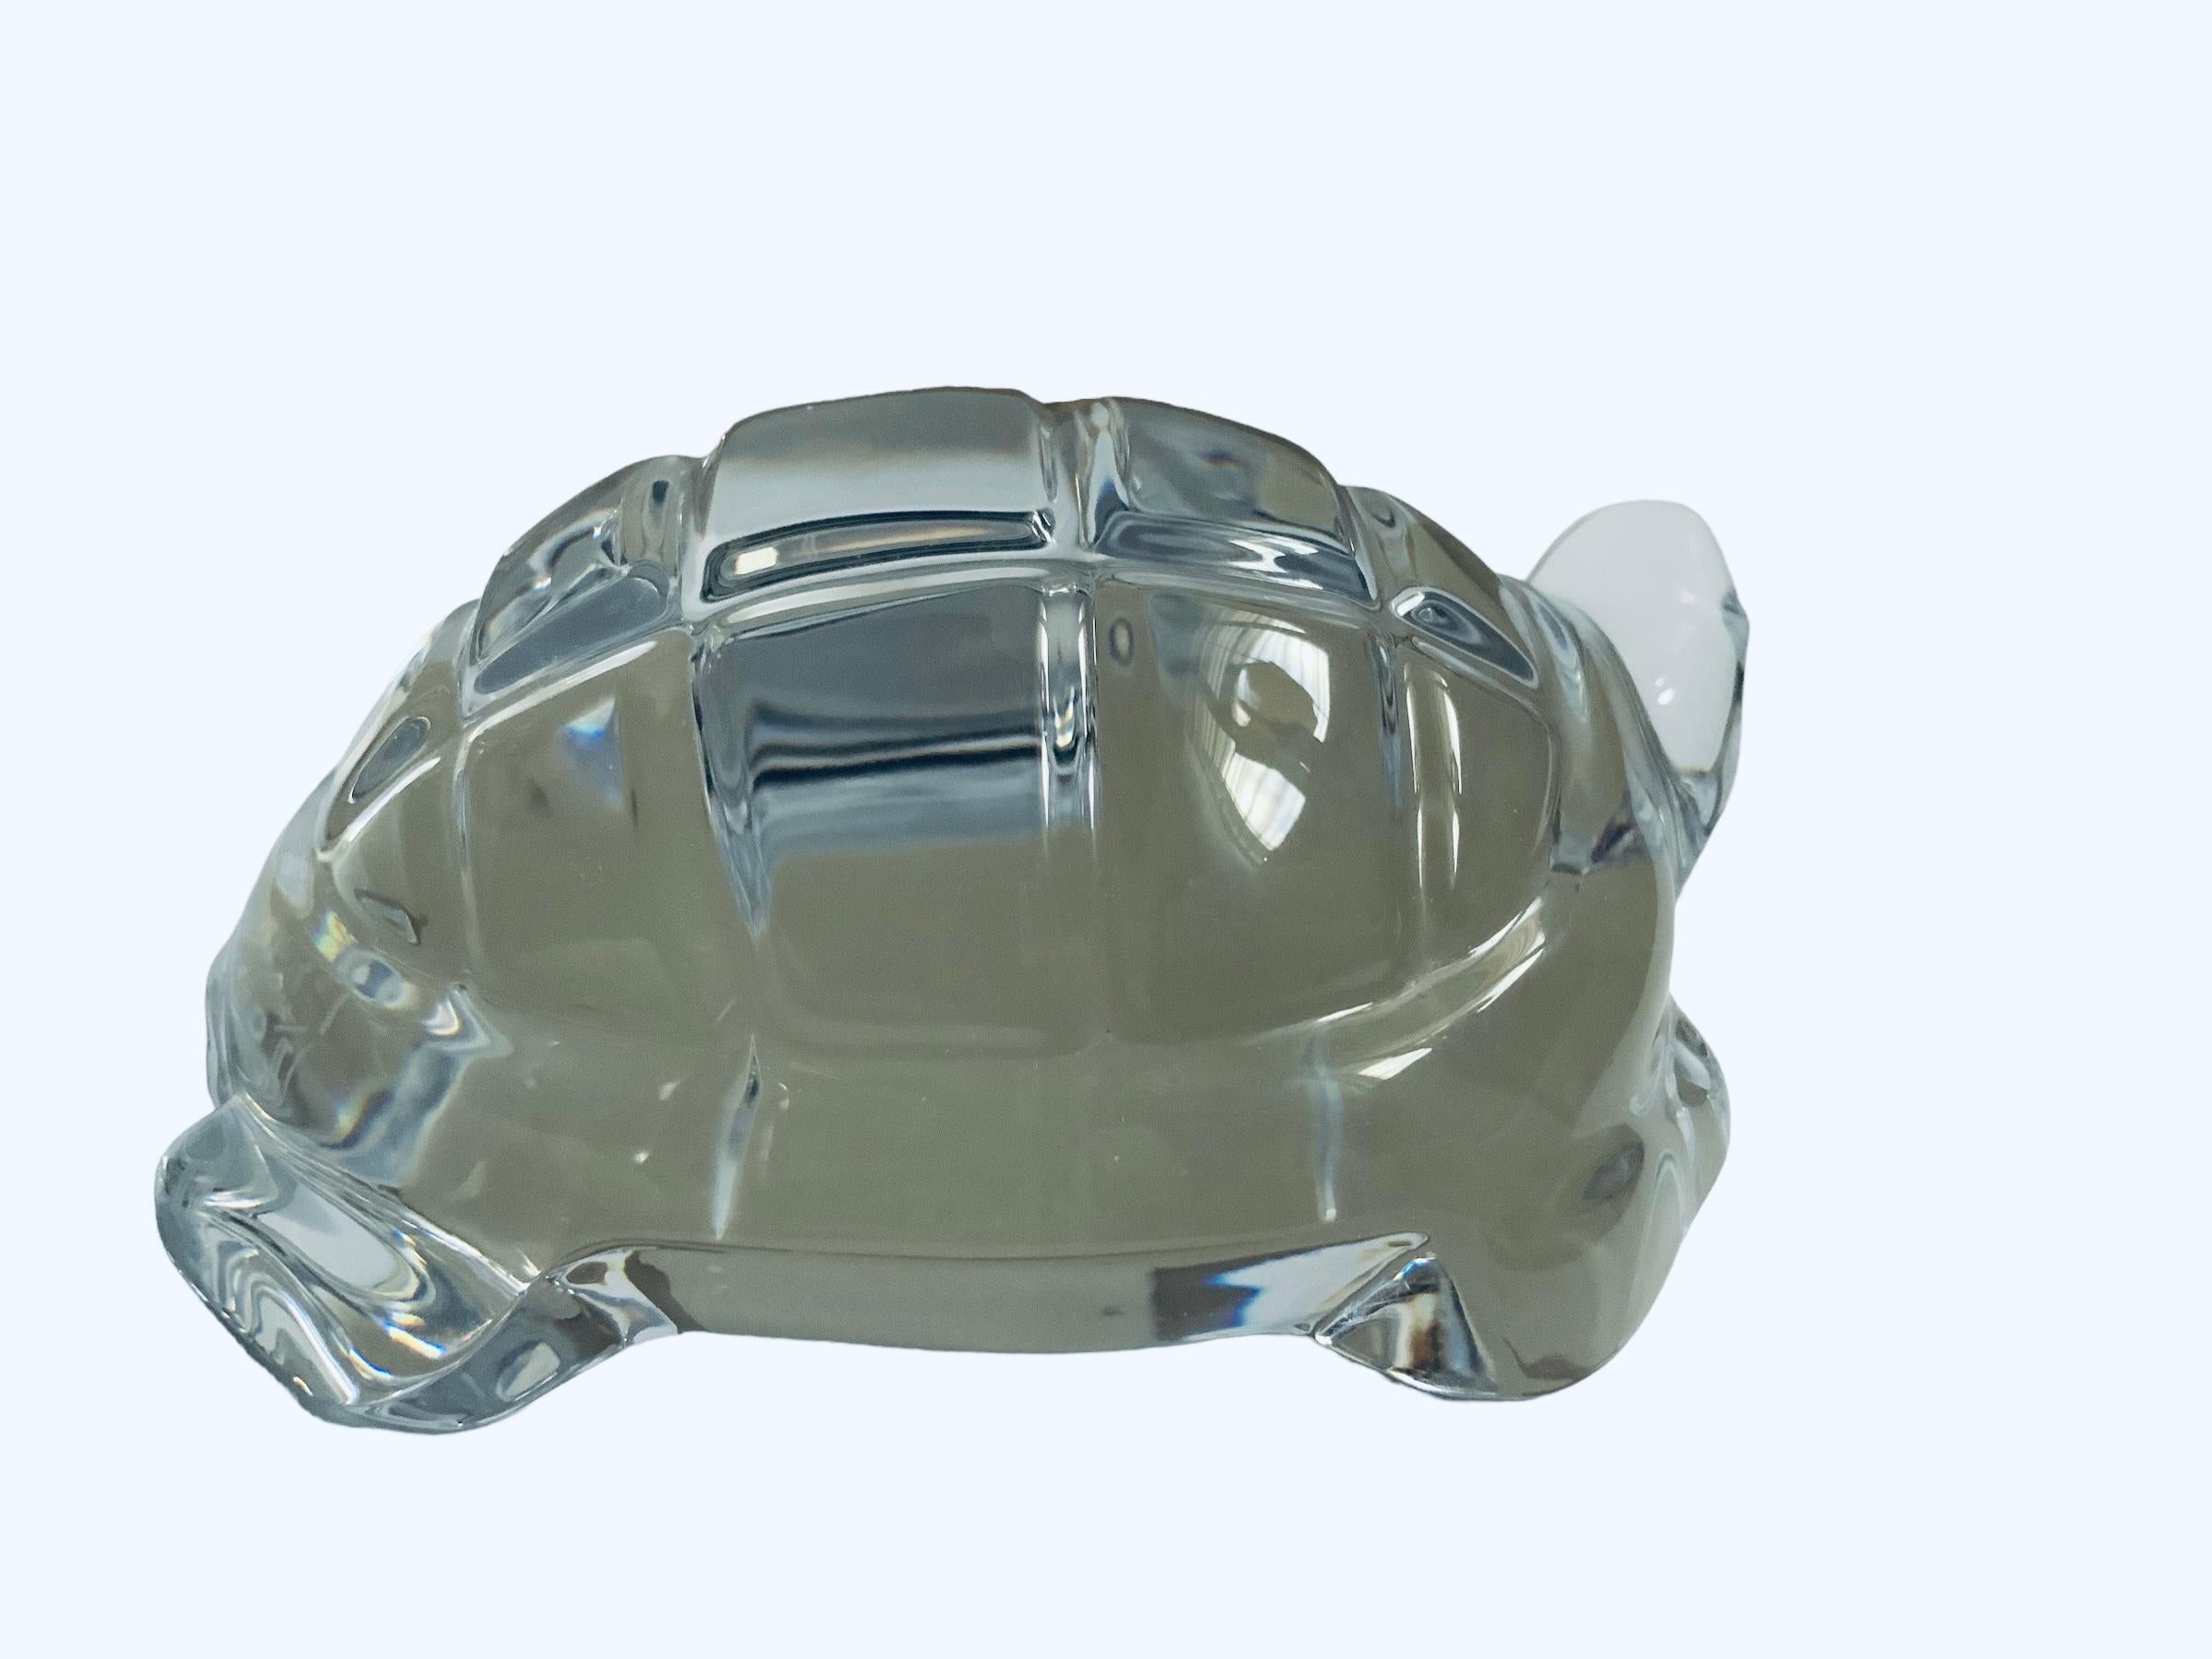 Il s'agit d'une sculpture/porte-papier en cristal de Baccarat représentant une tortue. Il représente une tortue avec une carapace, une tête, des pattes et un cou en cristal clair de forme ovale. Il porte le poinçon de Baccarat, France, gravé à